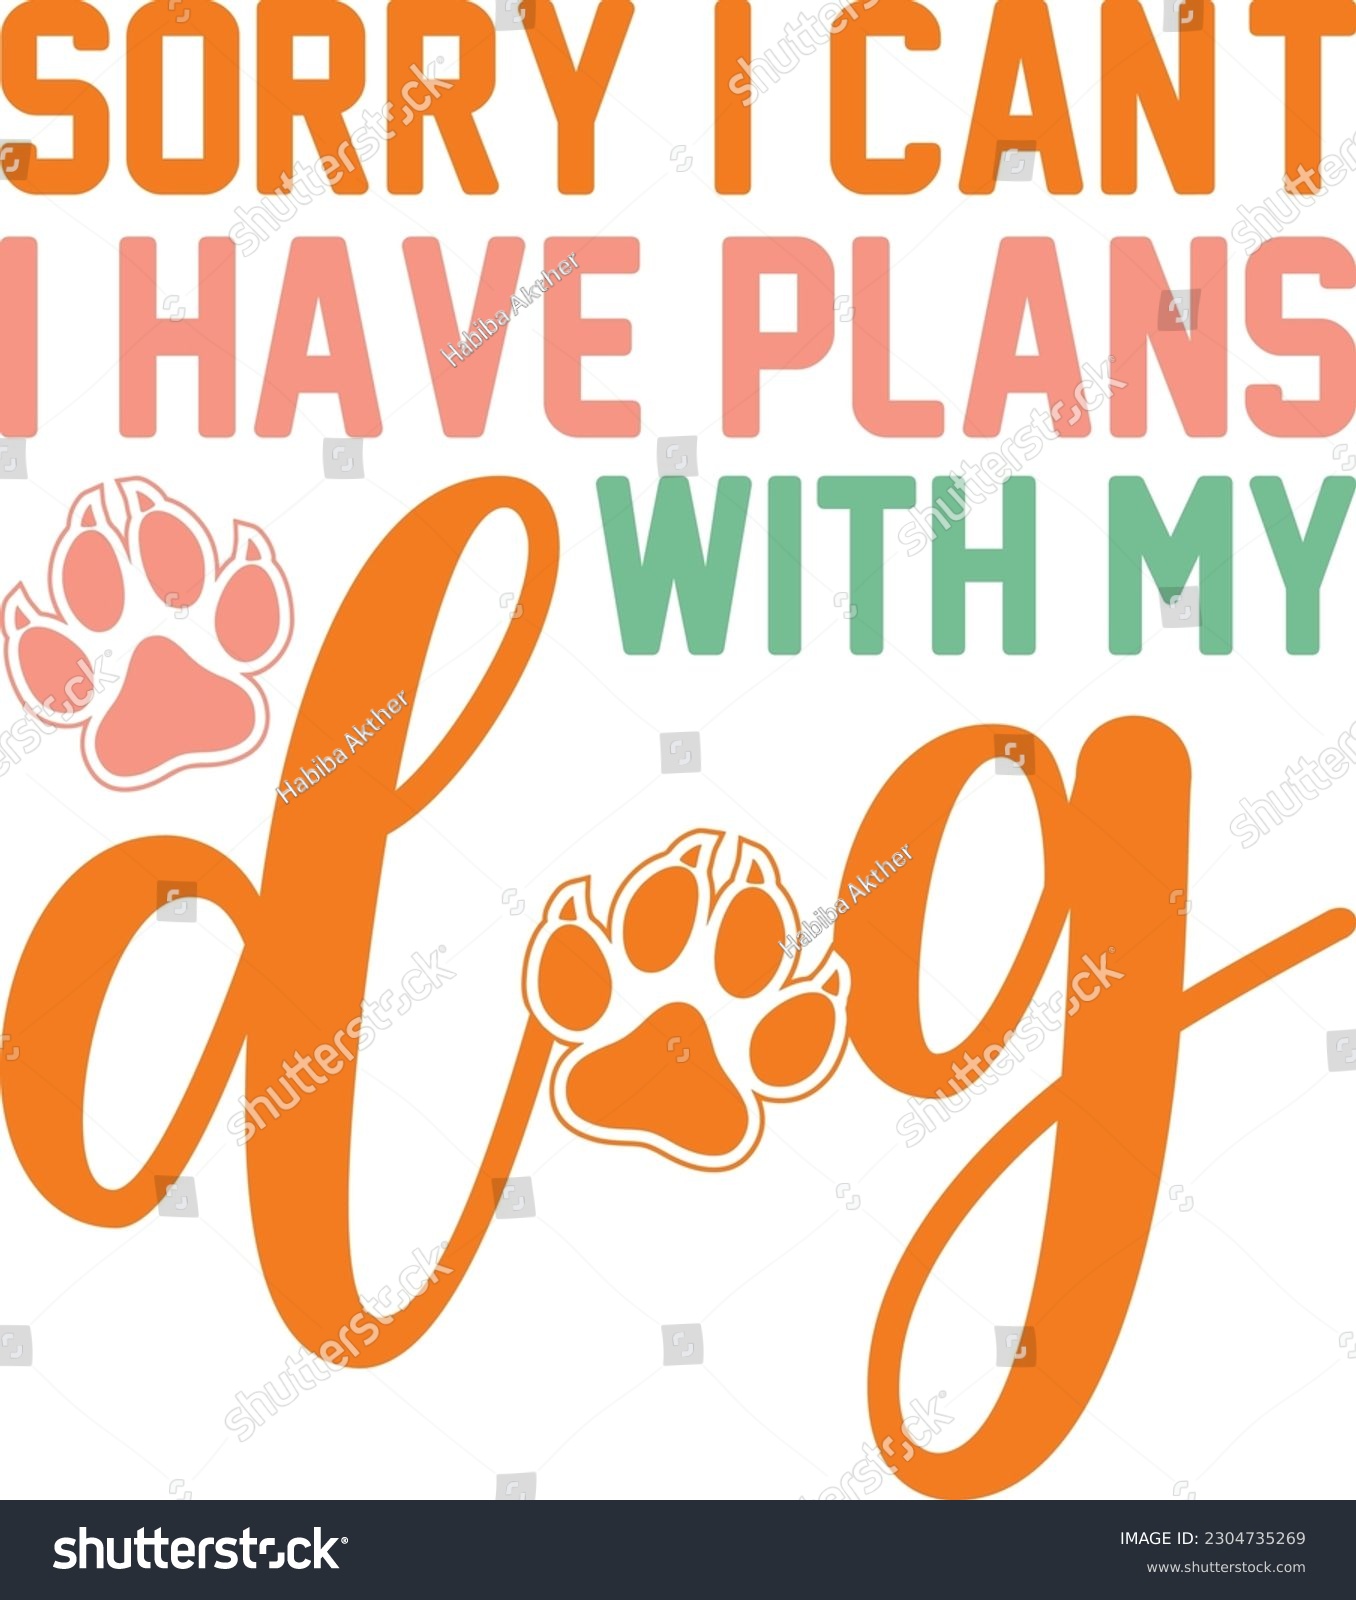 SVG of Sorry I can't I have plans with my dog,Dog mom,Puppy Love,Dog Mom Svg,Dog SVG,Silhouette,Dog Owner Svg, Funny Svg, Fur Mom Shirt Svg,Wine,Dog Mama,Dog Heart,Dog Paw,Eps,Labrador Svg,Pet Svg,Vector, svg